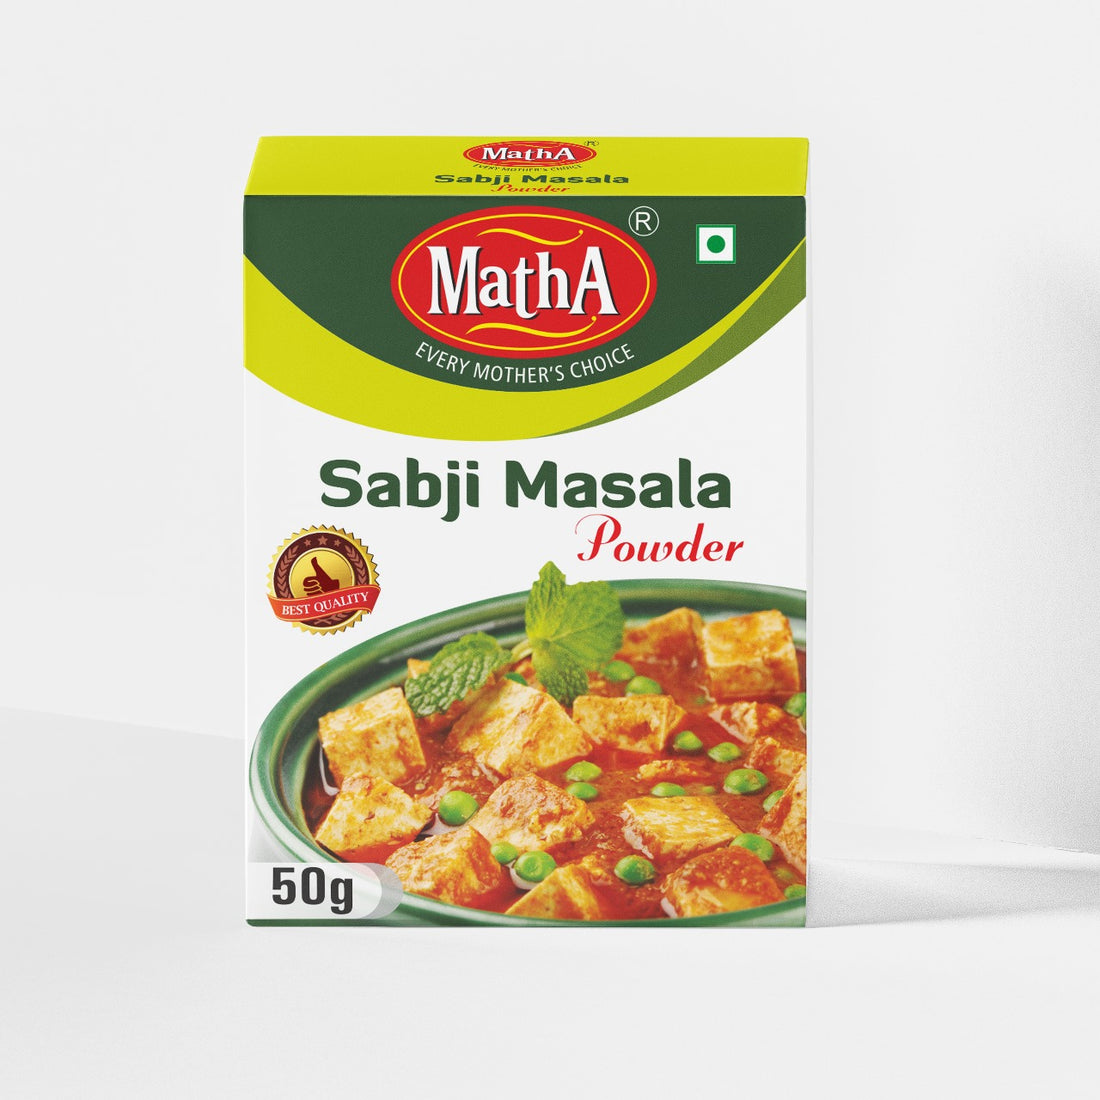 Sabji Masala Powder 50g Box